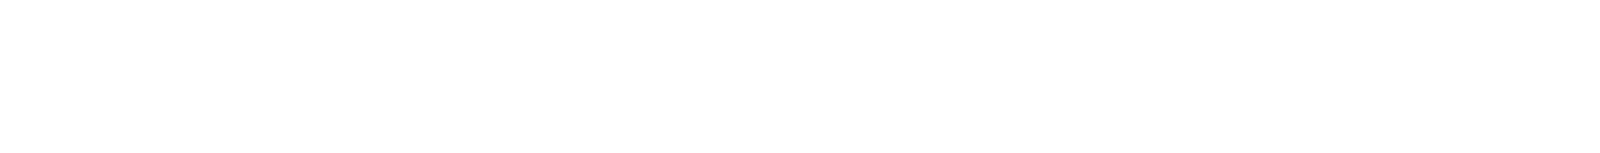 Ethan Allen
 logo large for dark backgrounds (transparent PNG)